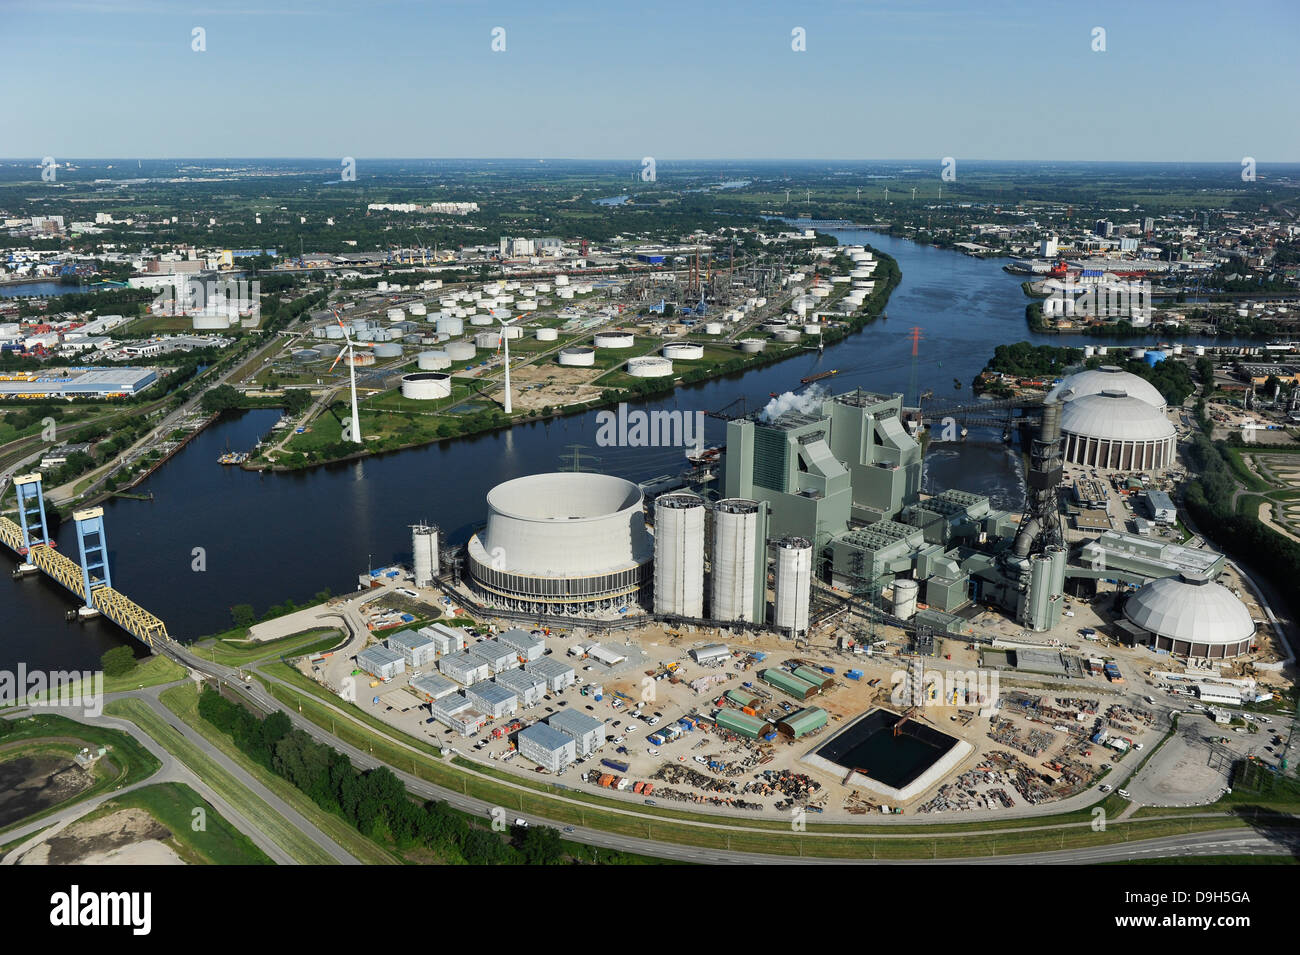 Allemagne Hambourg Moorburg jusqu', chantier de Vattenfall centrale à charbon dans le port, Elbe et Kattwyk pont, derrière les réservoirs d'huile et de la raffinerie de Shell Banque D'Images